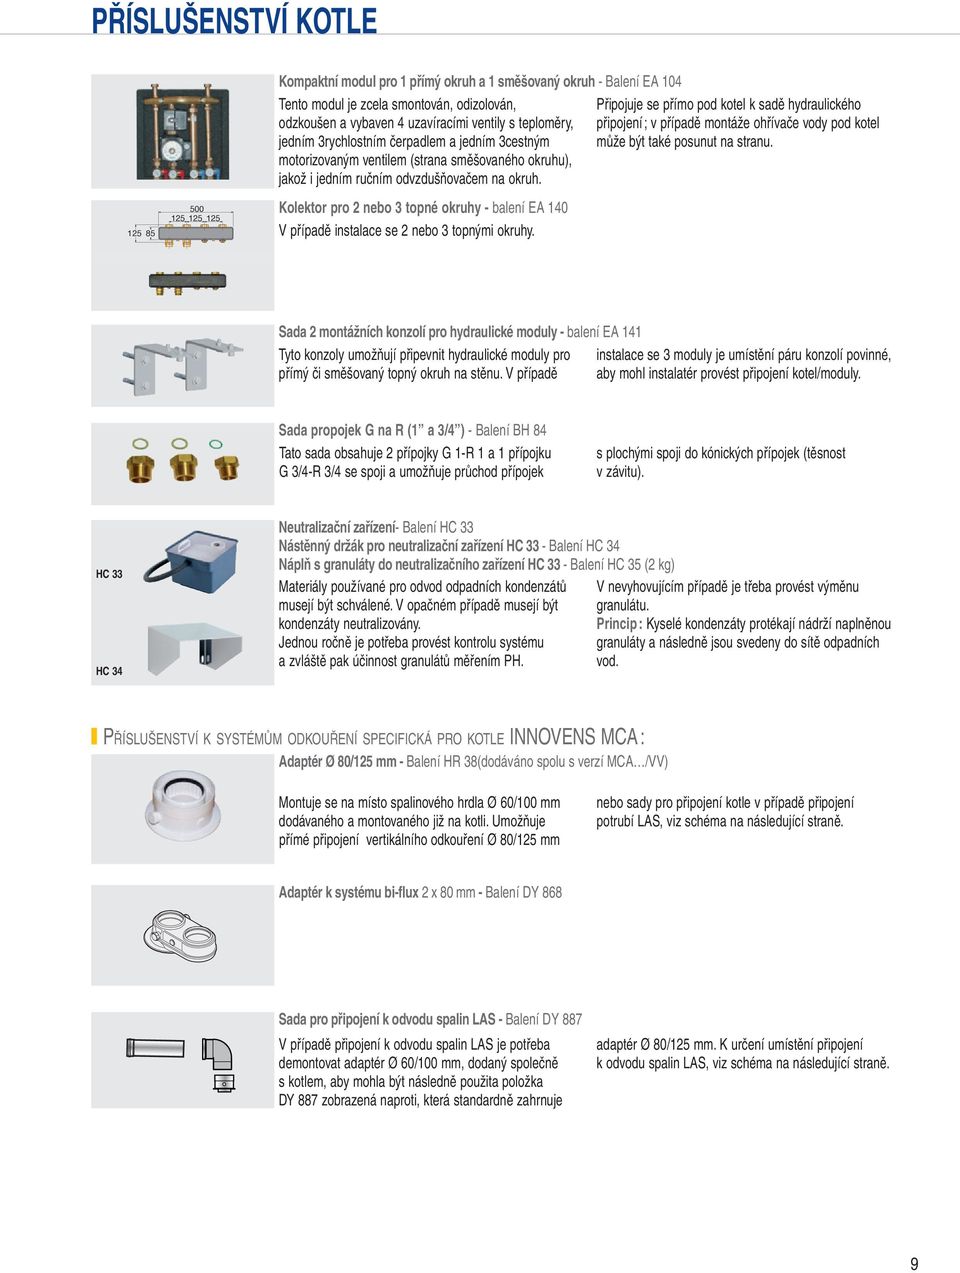 Kolektor pro nebo topné okruhy - balení EA 10 V případě instalace se nebo topnými okruhy.